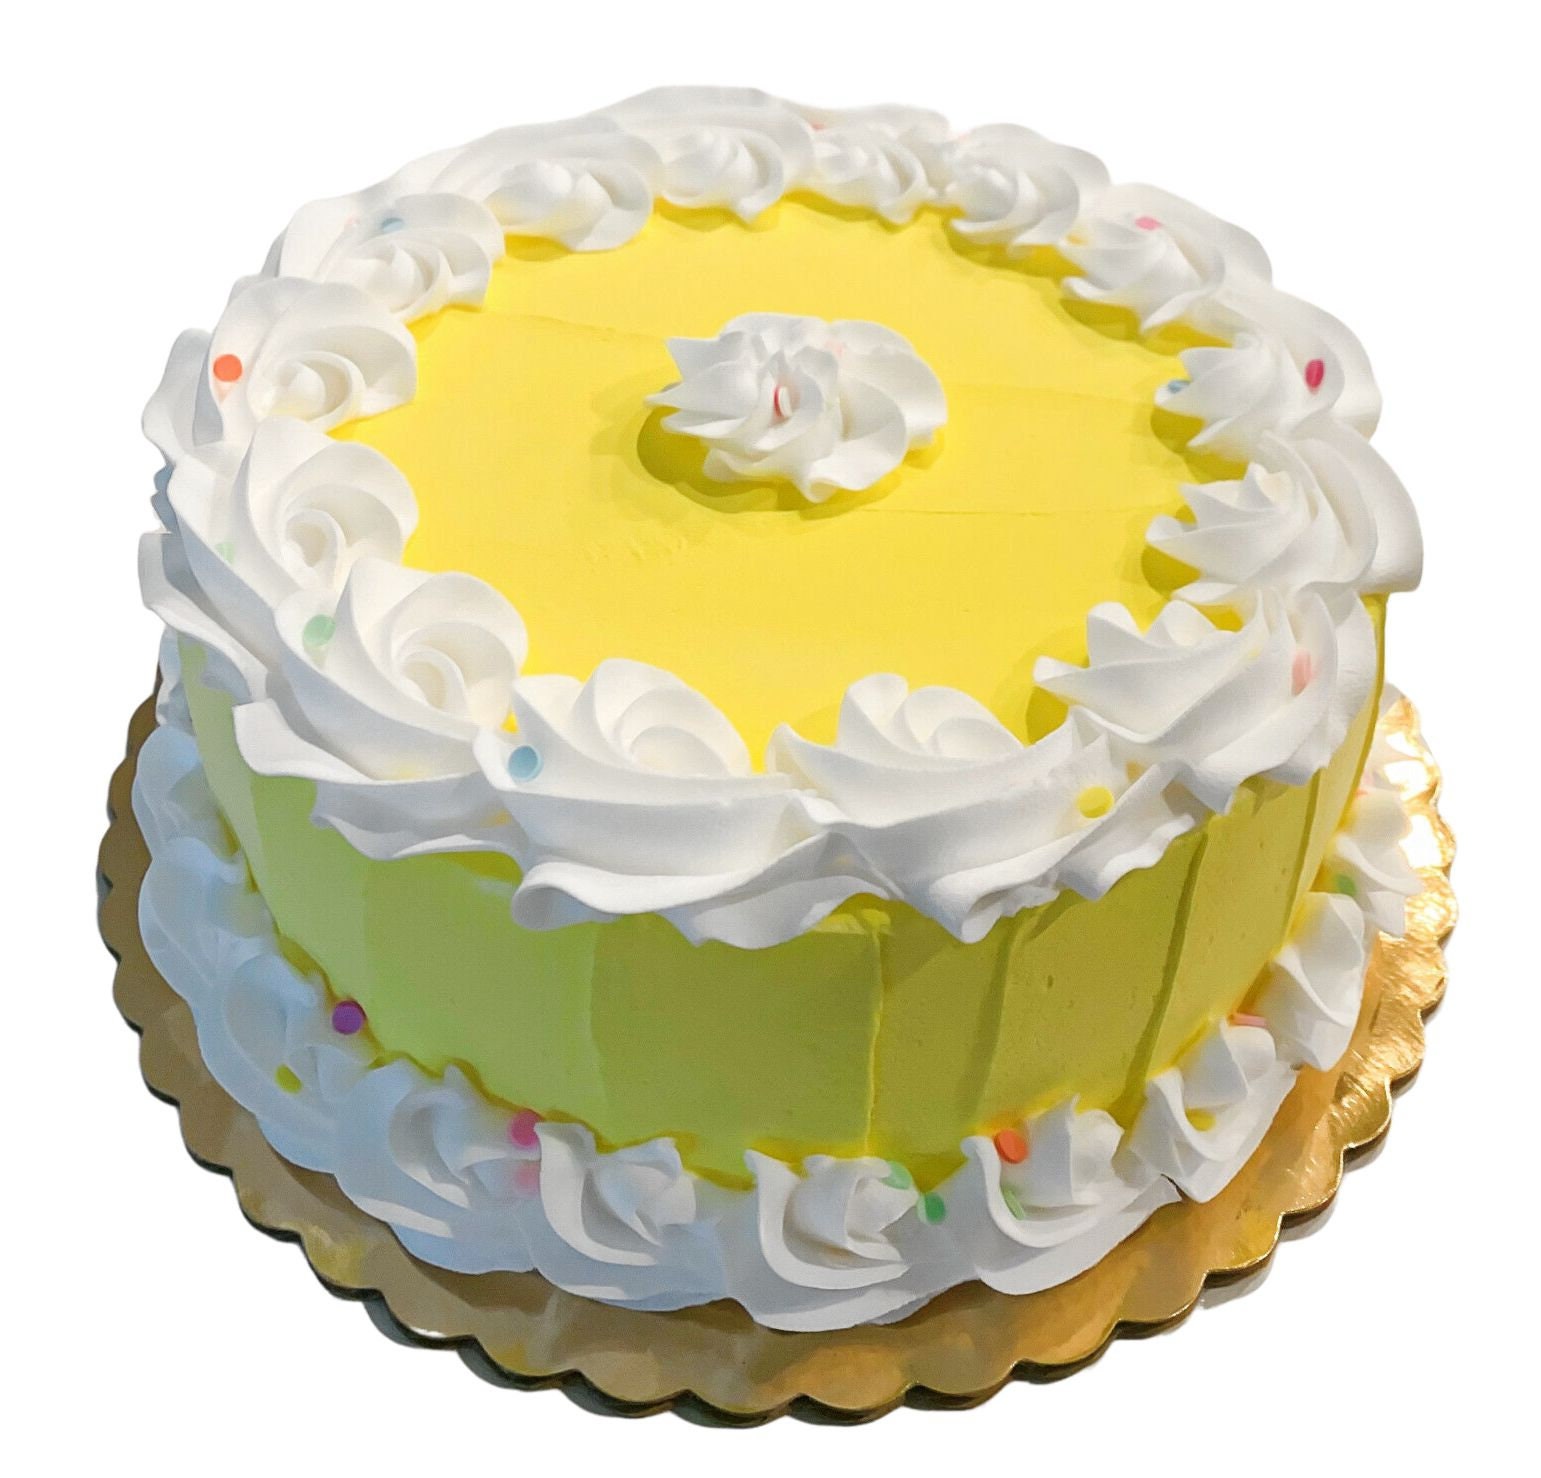 DEZICAKES Fake Cakeyellow Birthday Cake With Confetti - Etsy